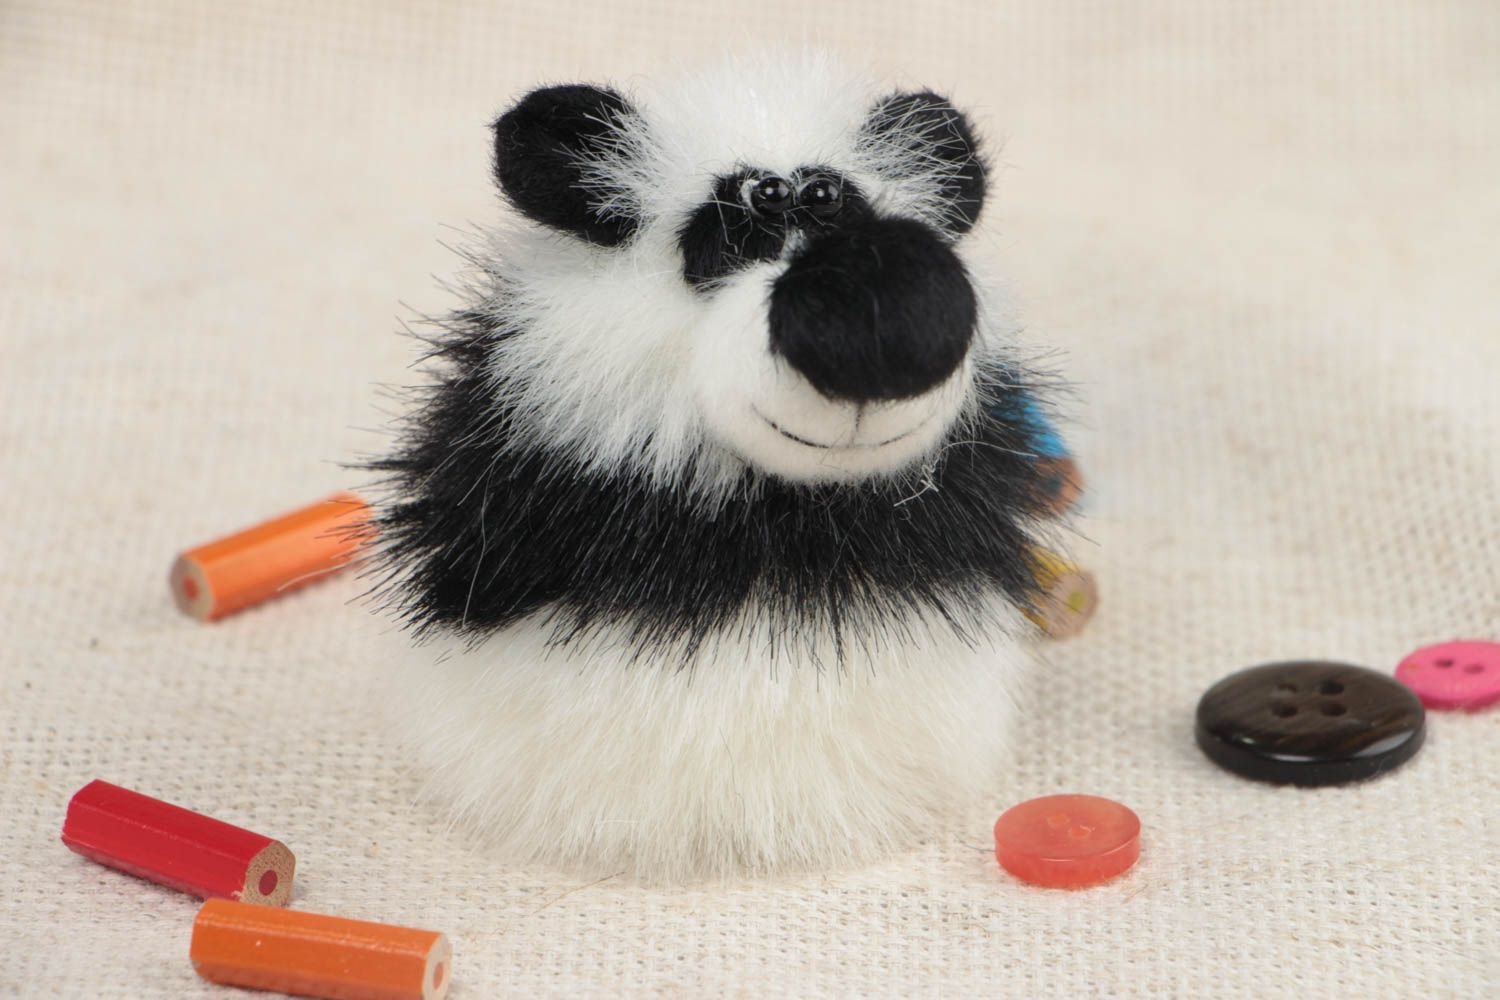 Игрушка на пальчик меховая в виде панды маленькая белая с черным ручная работа фото 1